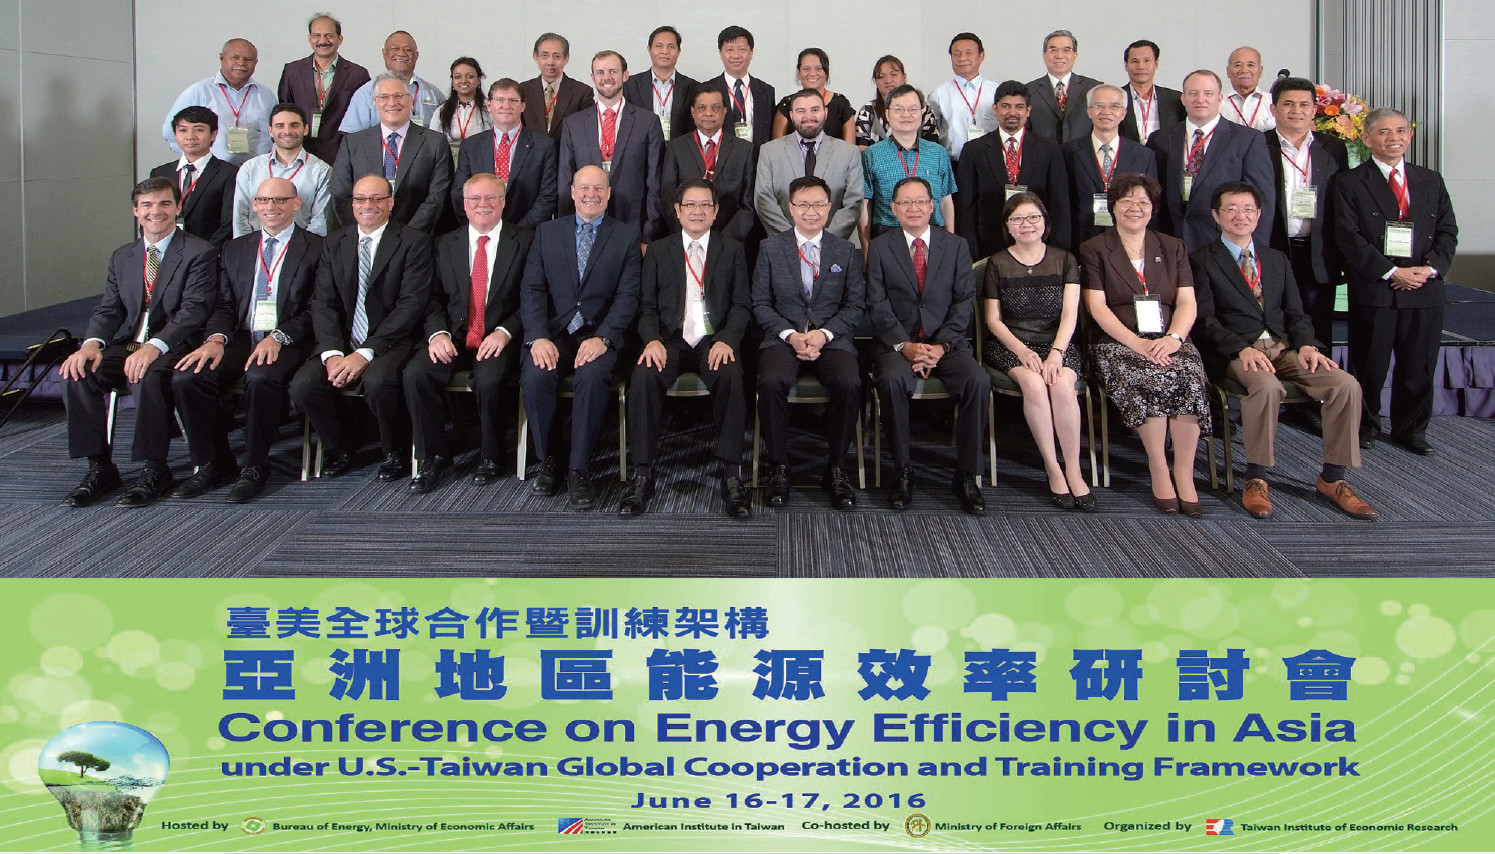 臺美全球合作暨訓練架構─亞洲地區能源效率研討會